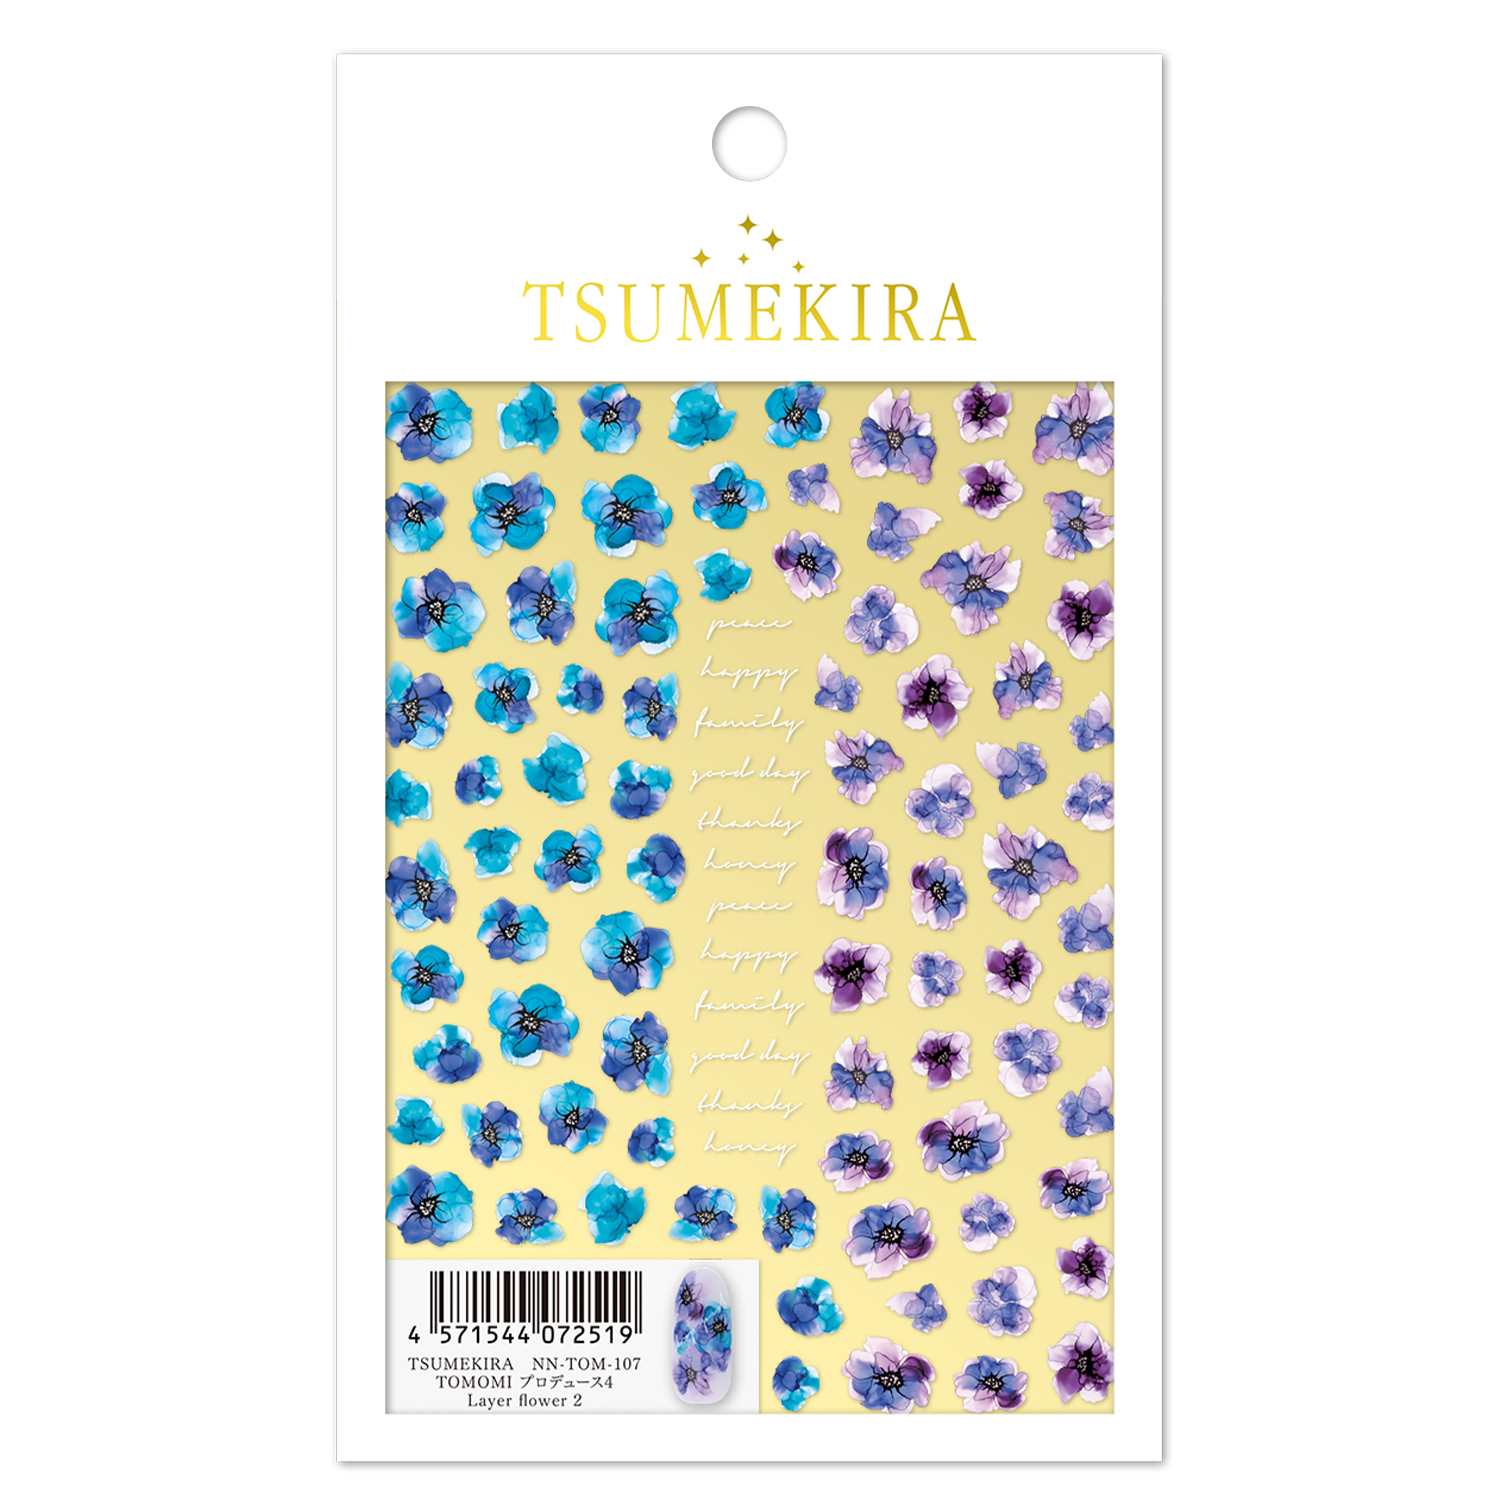 【お取り寄せ・返品不可】NN-TOM-107  TSUMEKIRA「ツメキラ」 TOMOMI プロデュース4 Layer flower 2  (枚)